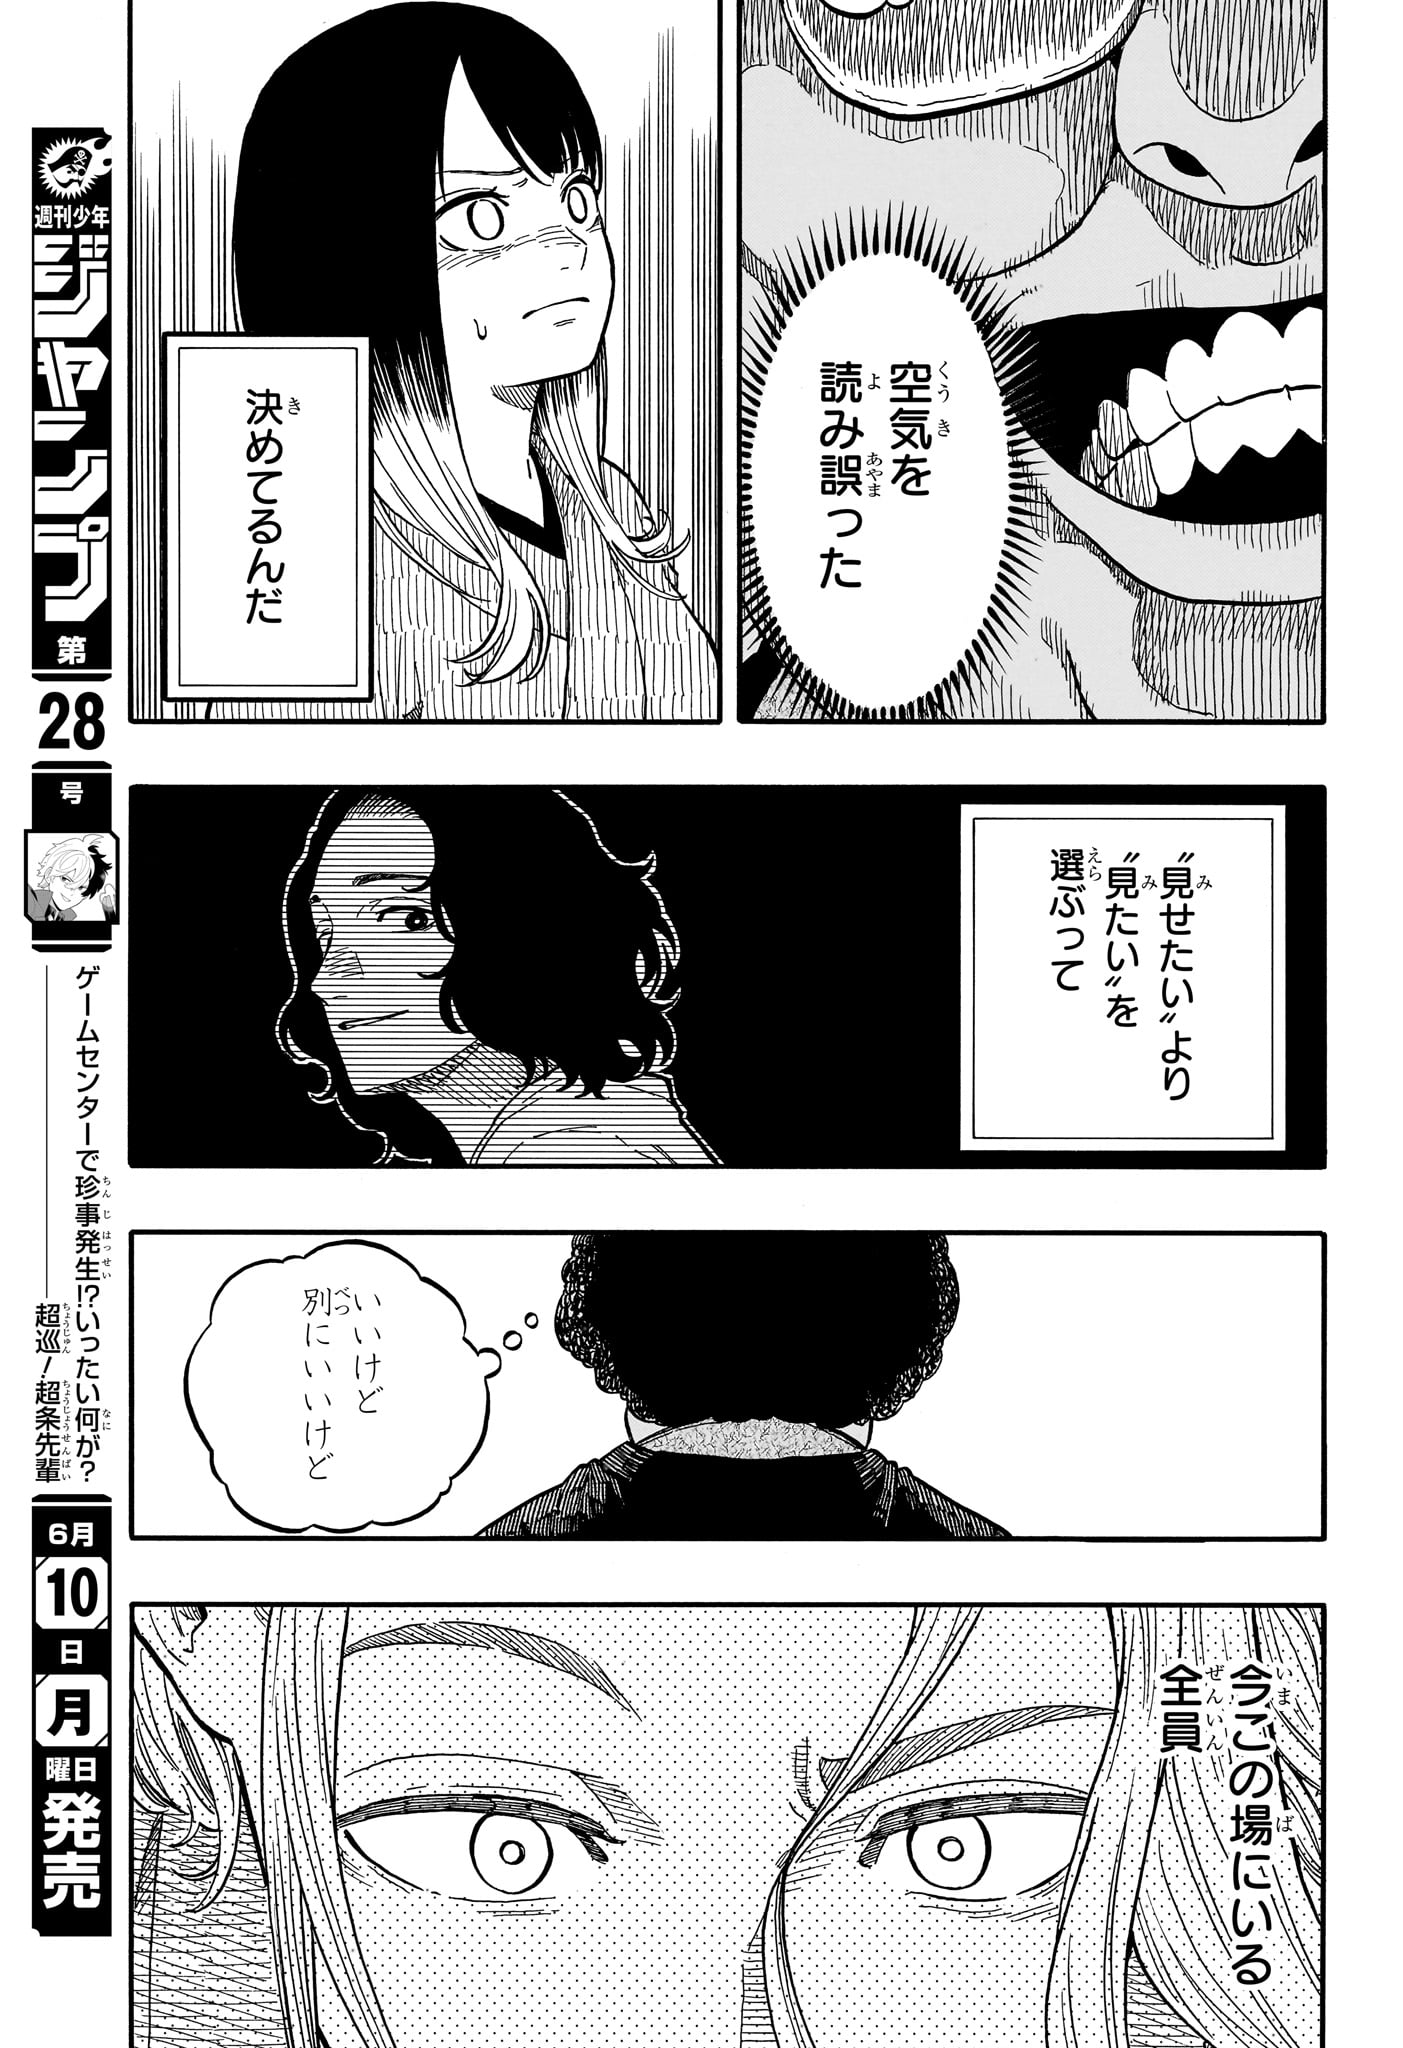 Akane-Banashi - Chapter 112 - Page 11